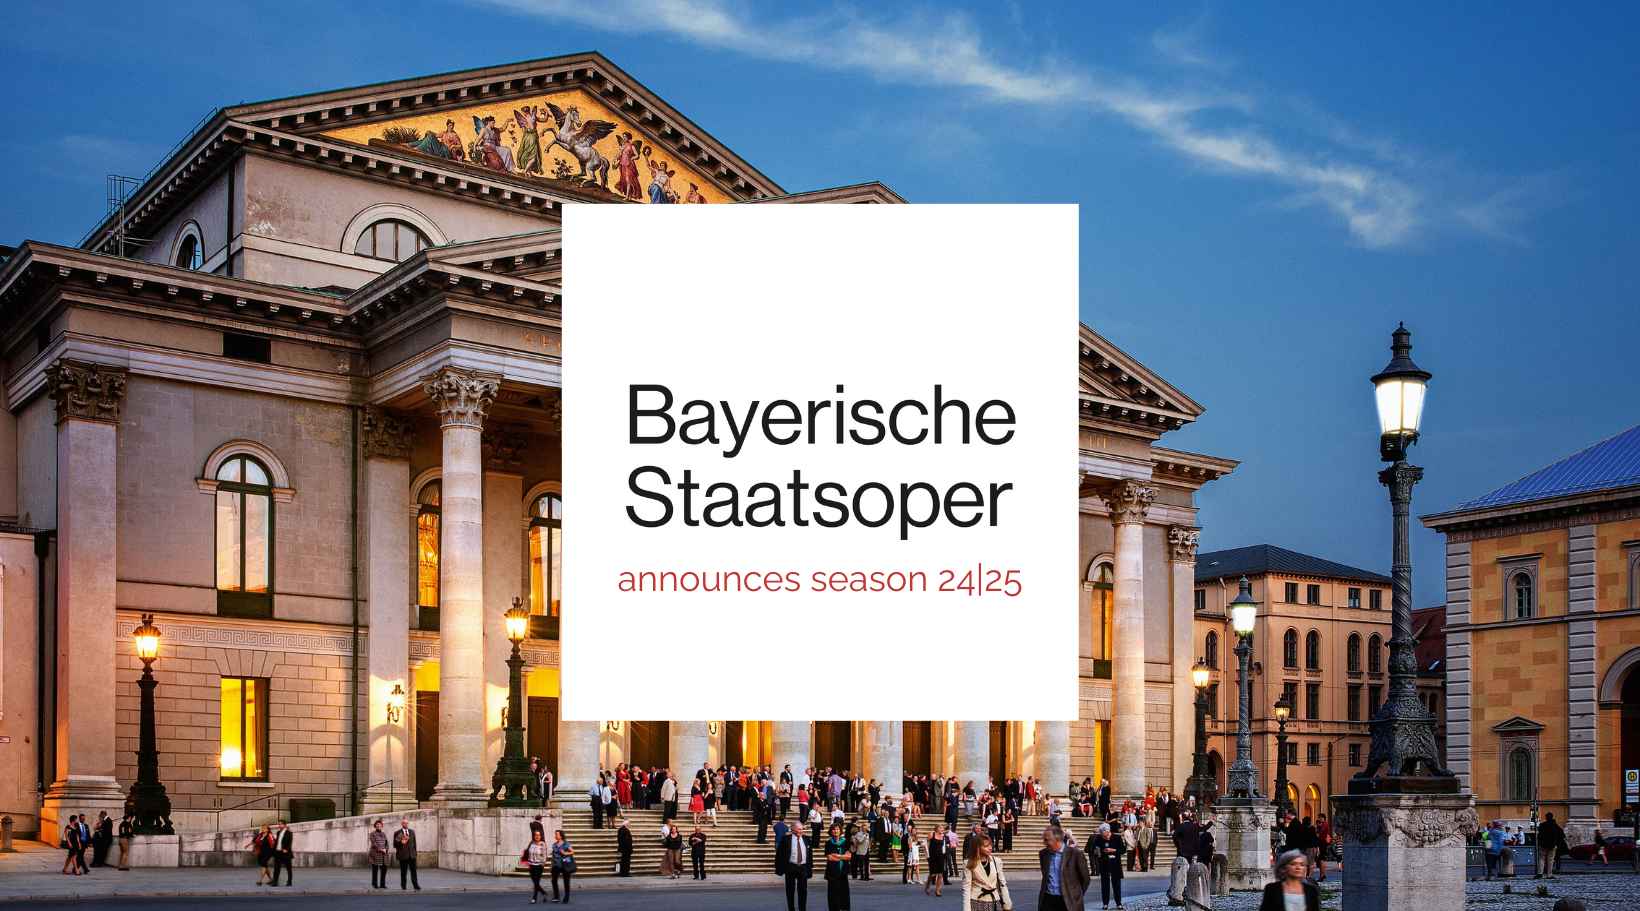 New season at the Bayerische Staatsoper!